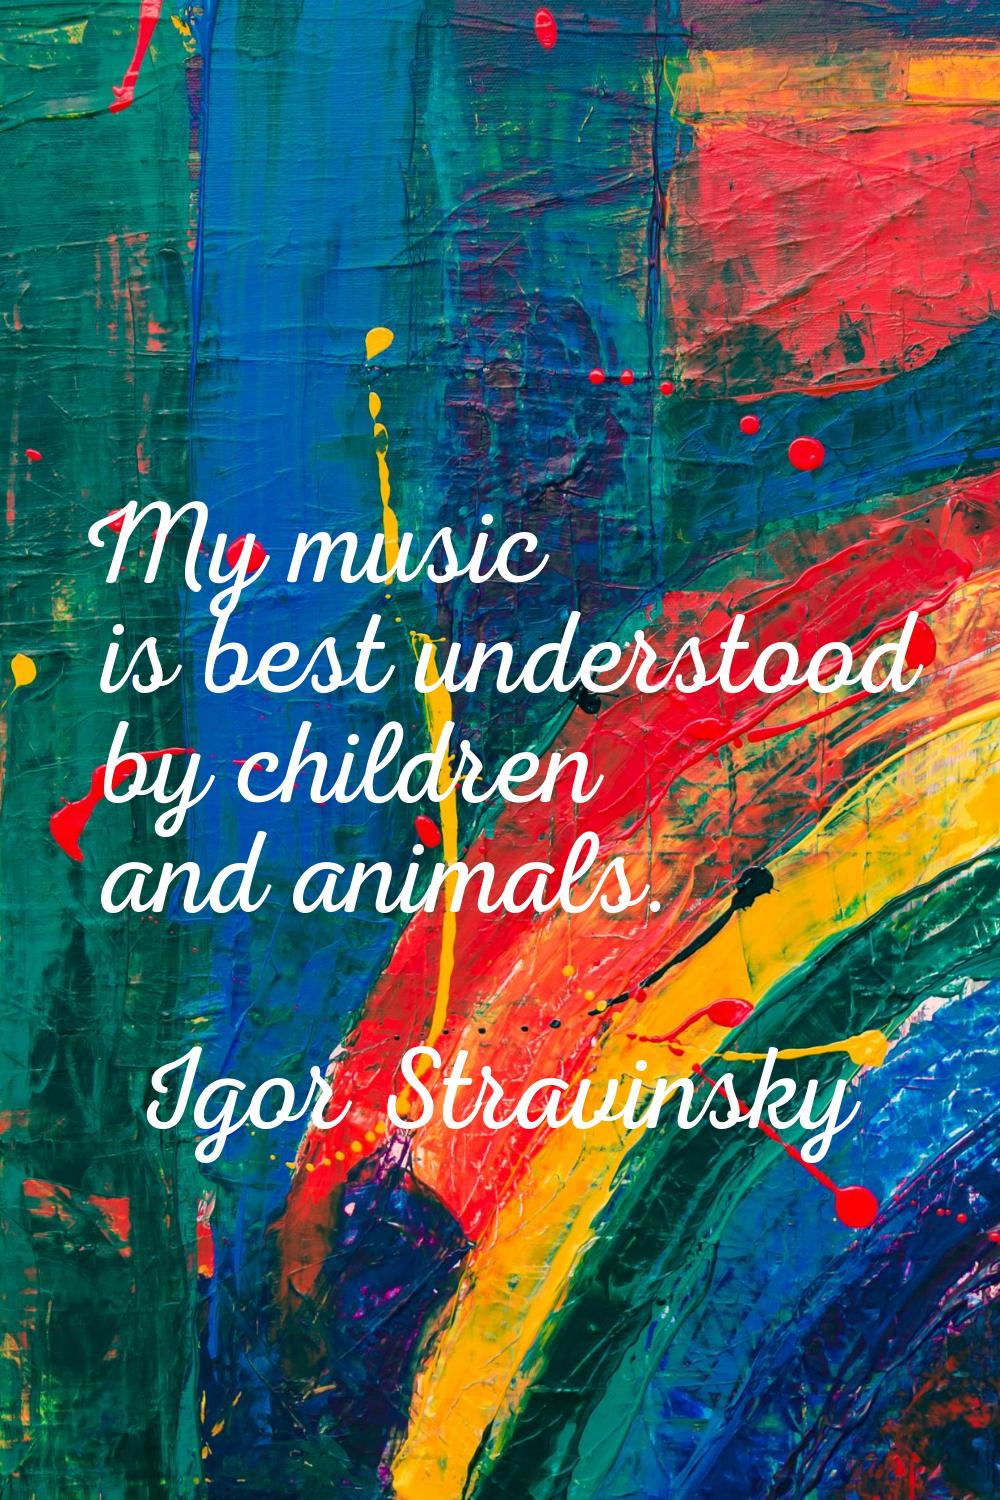 My music is best understood by children and animals.